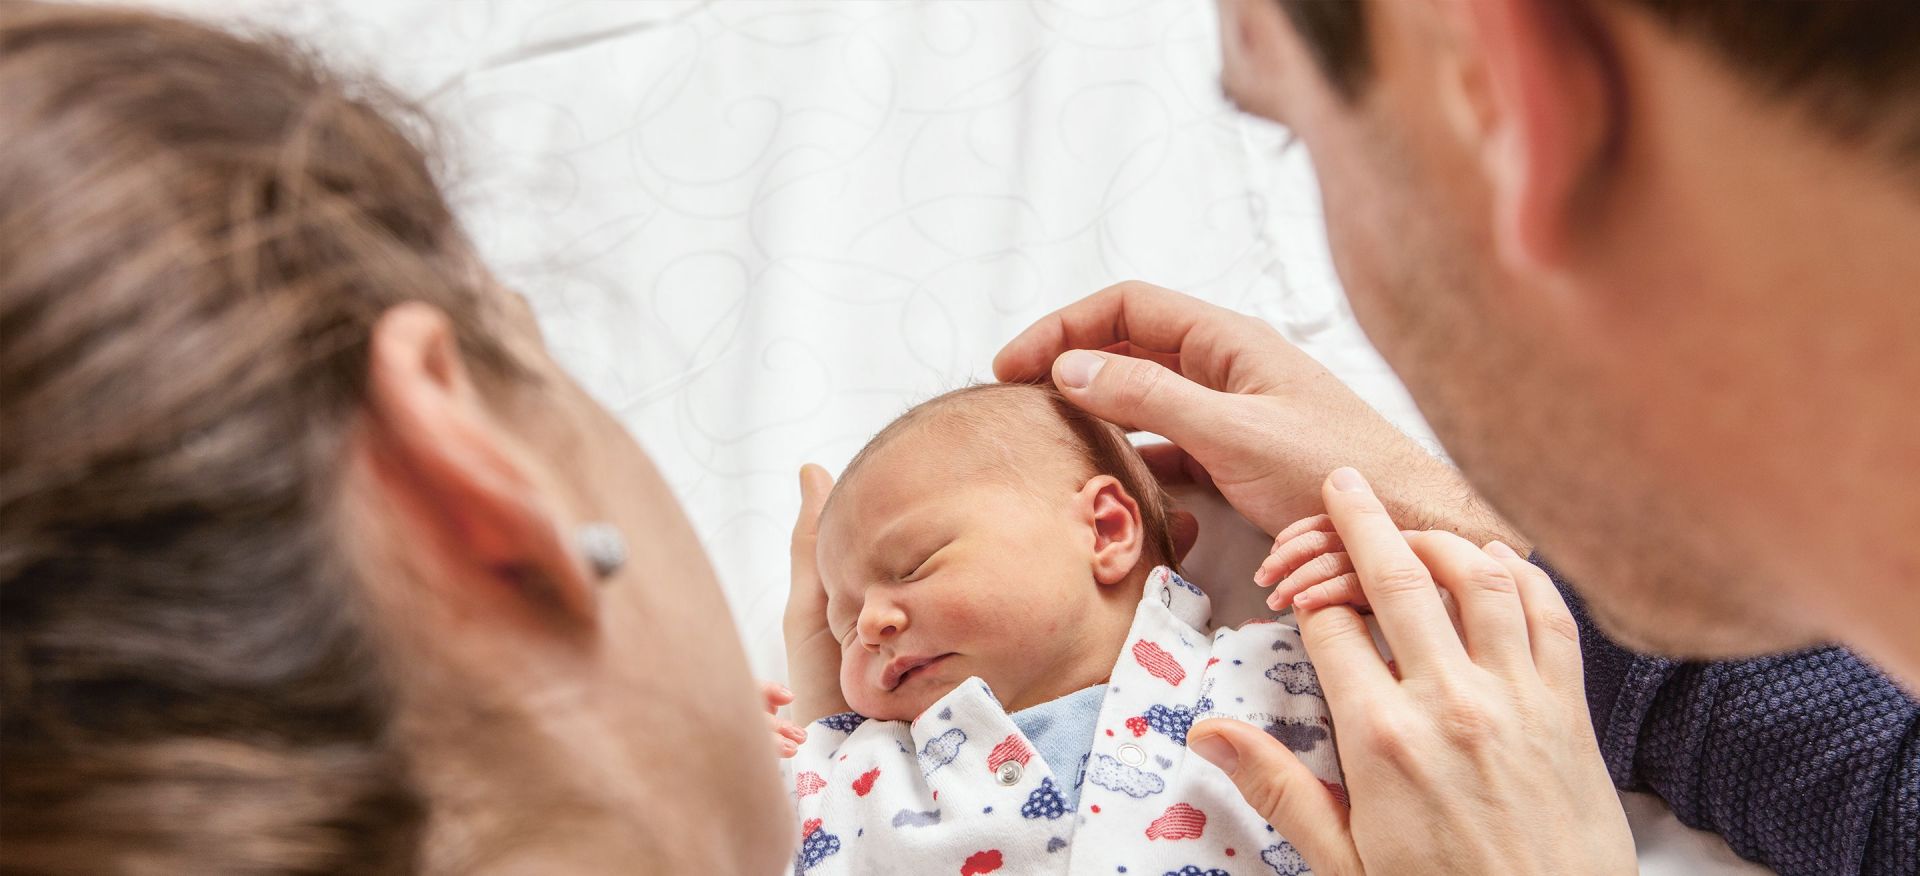 Ins Leben Starten: Eltern mit Neugeborenem | KSW Storys